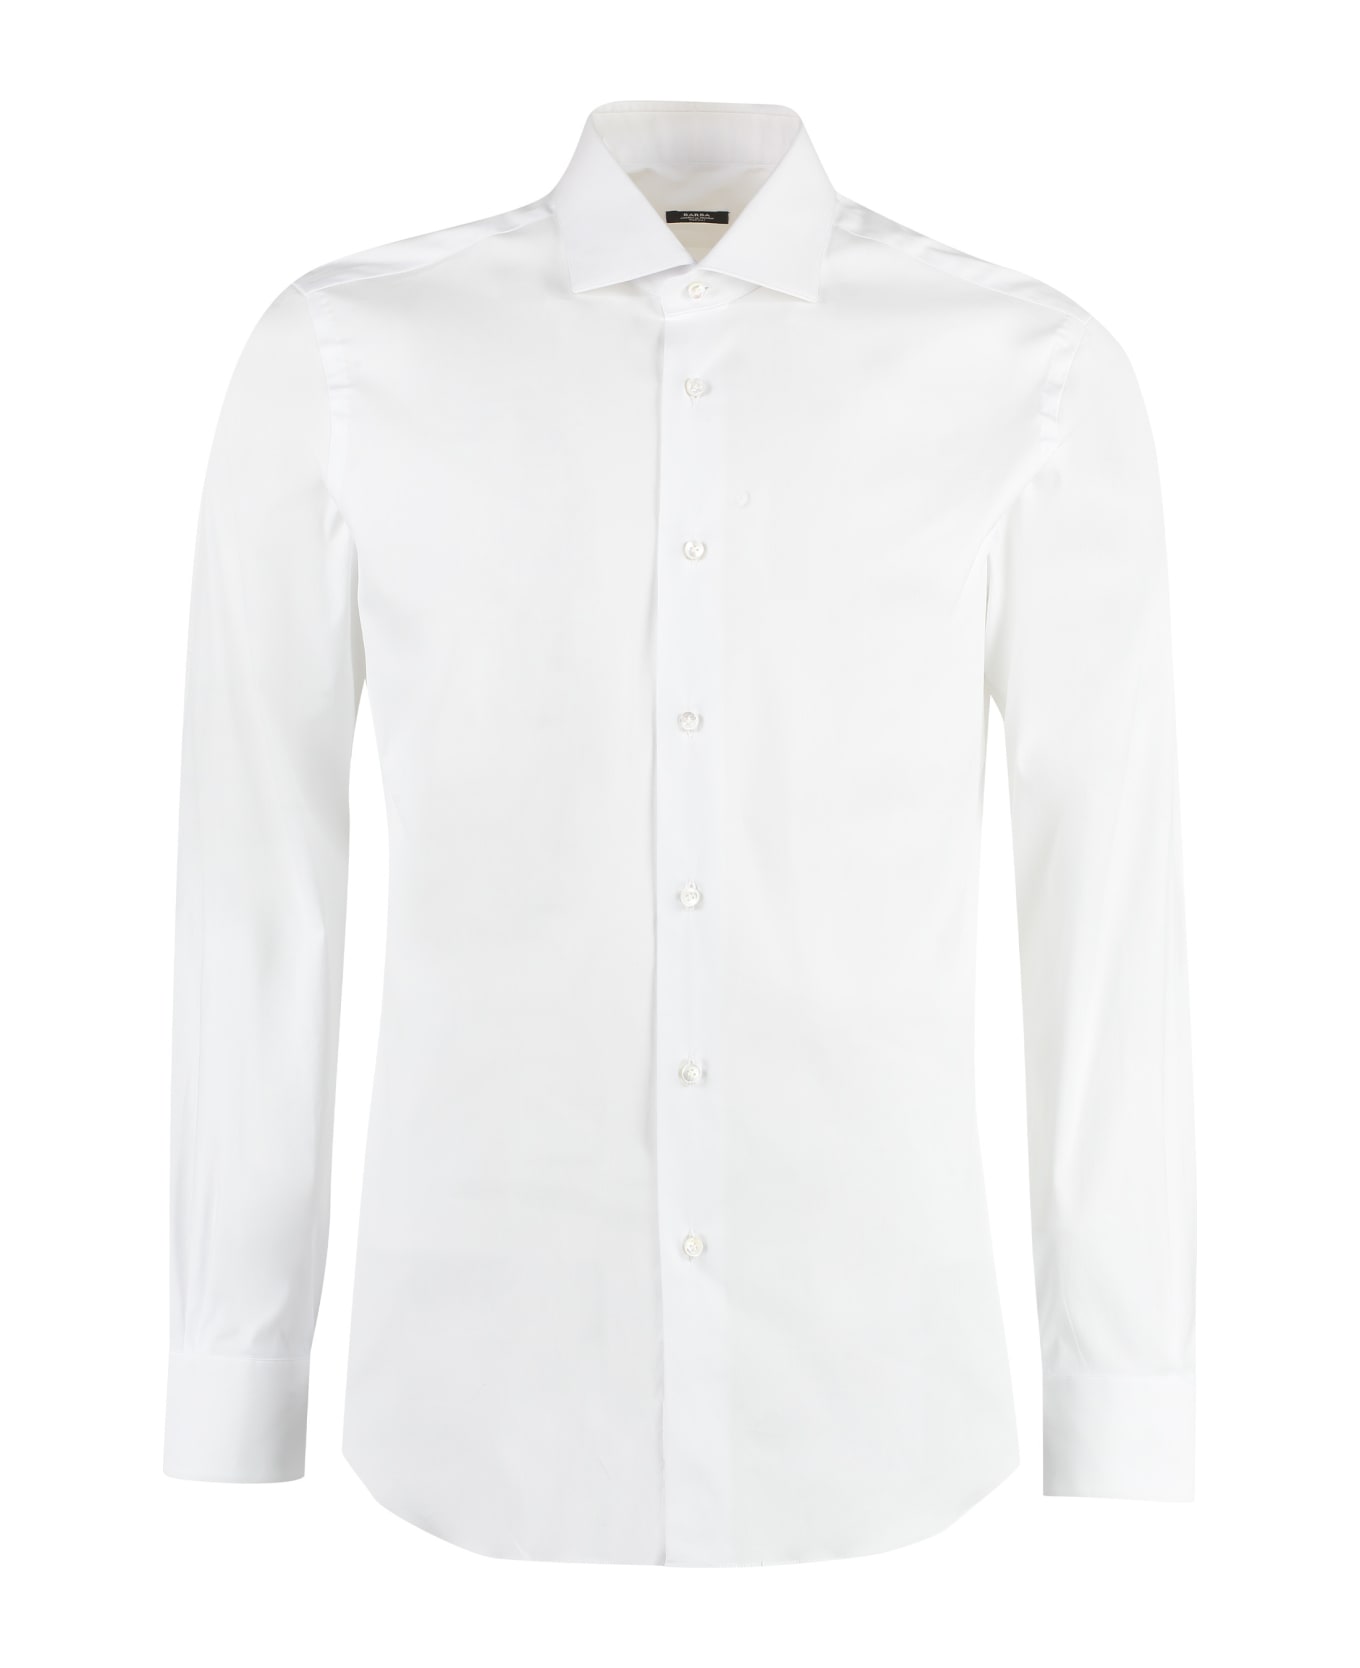 Barba Napoli Cotton Shirt - White